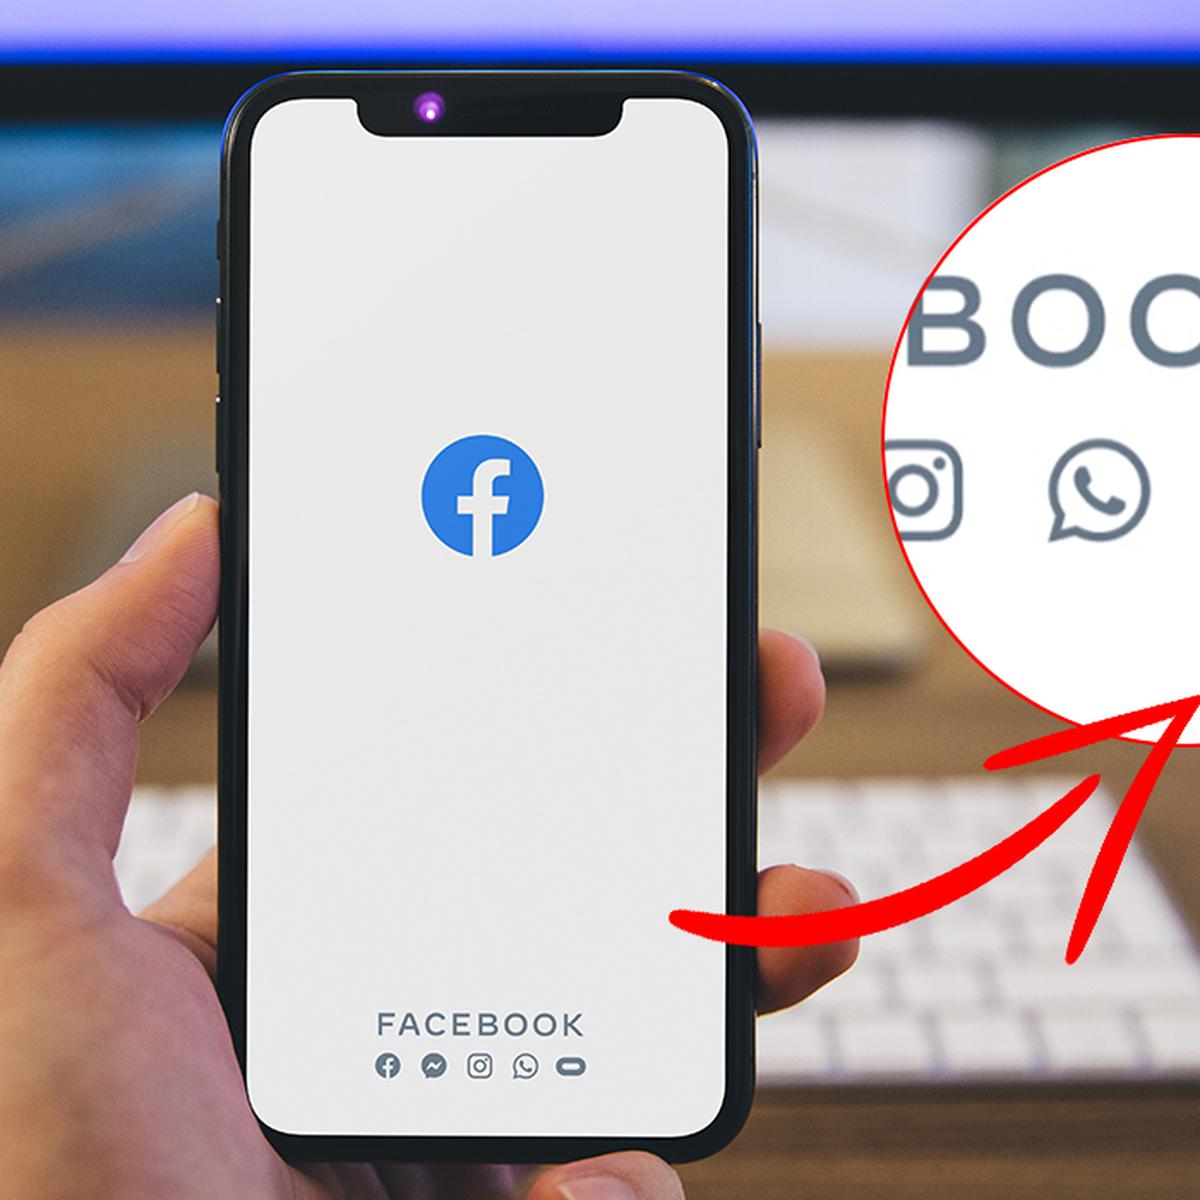 Facebook | Qué significa el símbolo que se encuentra al lado WhatsApp |  Iniciar sesión | FB | Oculus | Mark Zuckerberg | Wasap | Viral | Tutorial |  Meaning | Estados